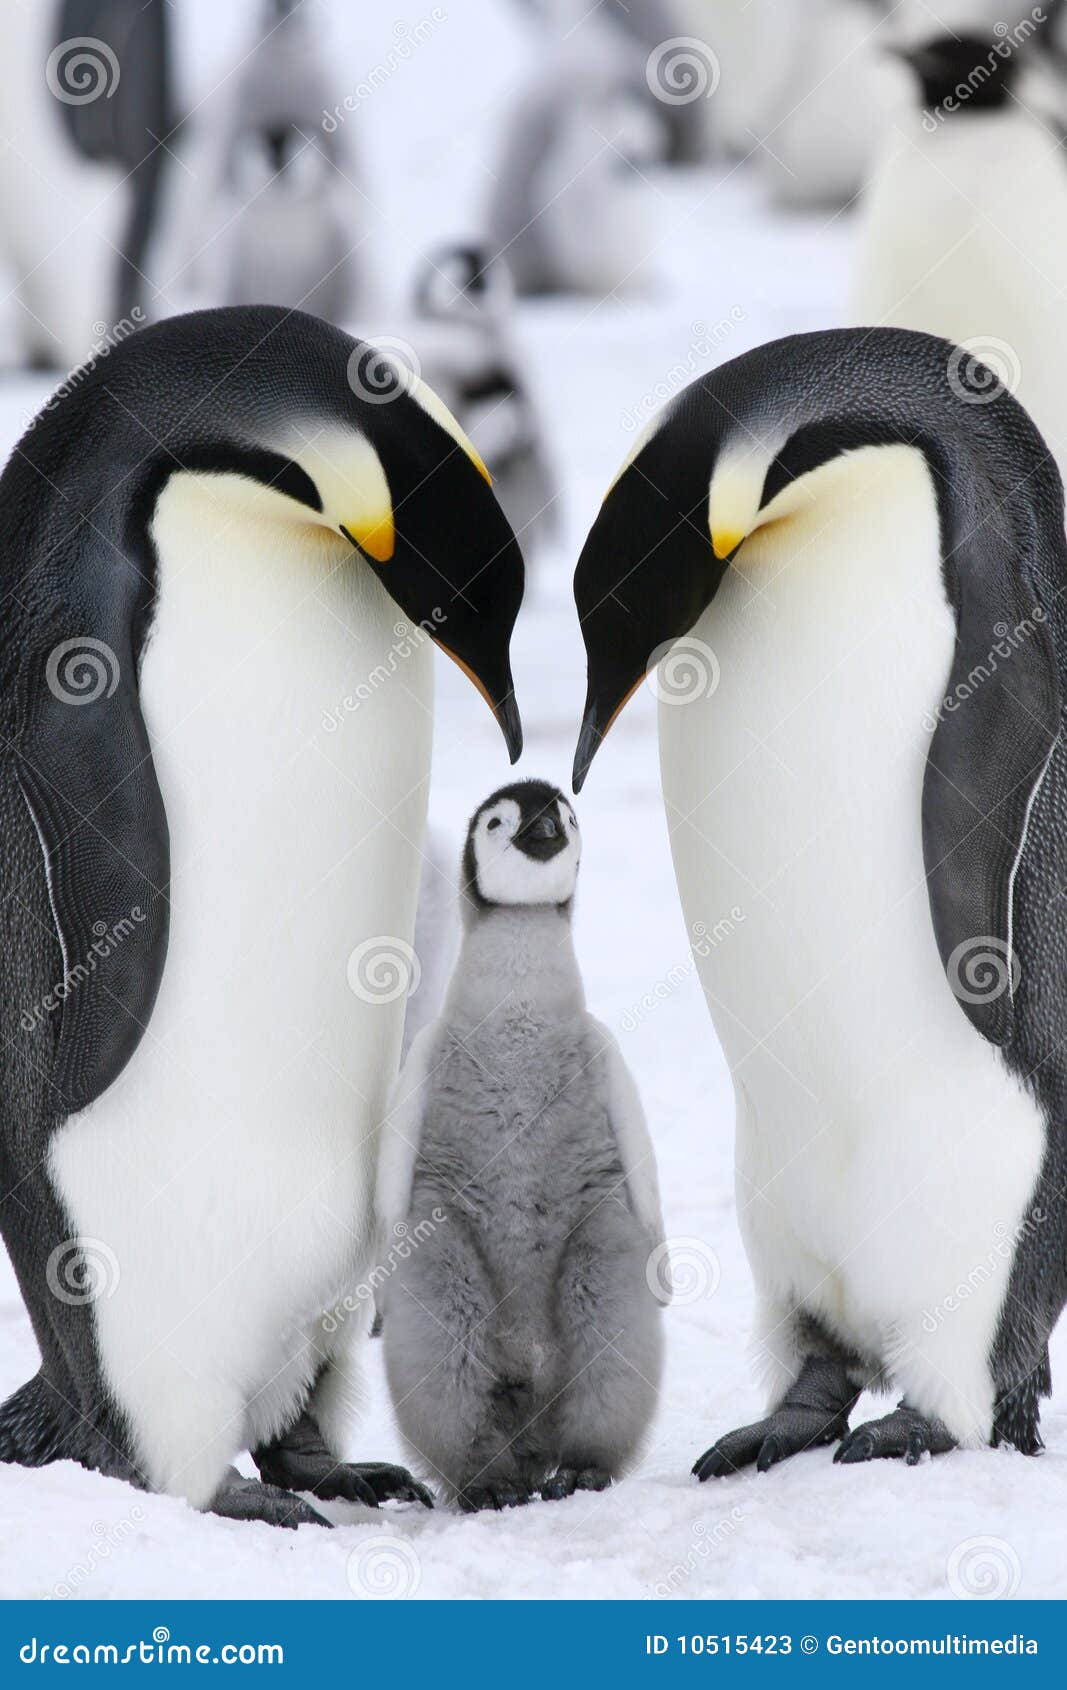 emperor penguins (aptenodytes forsteri)